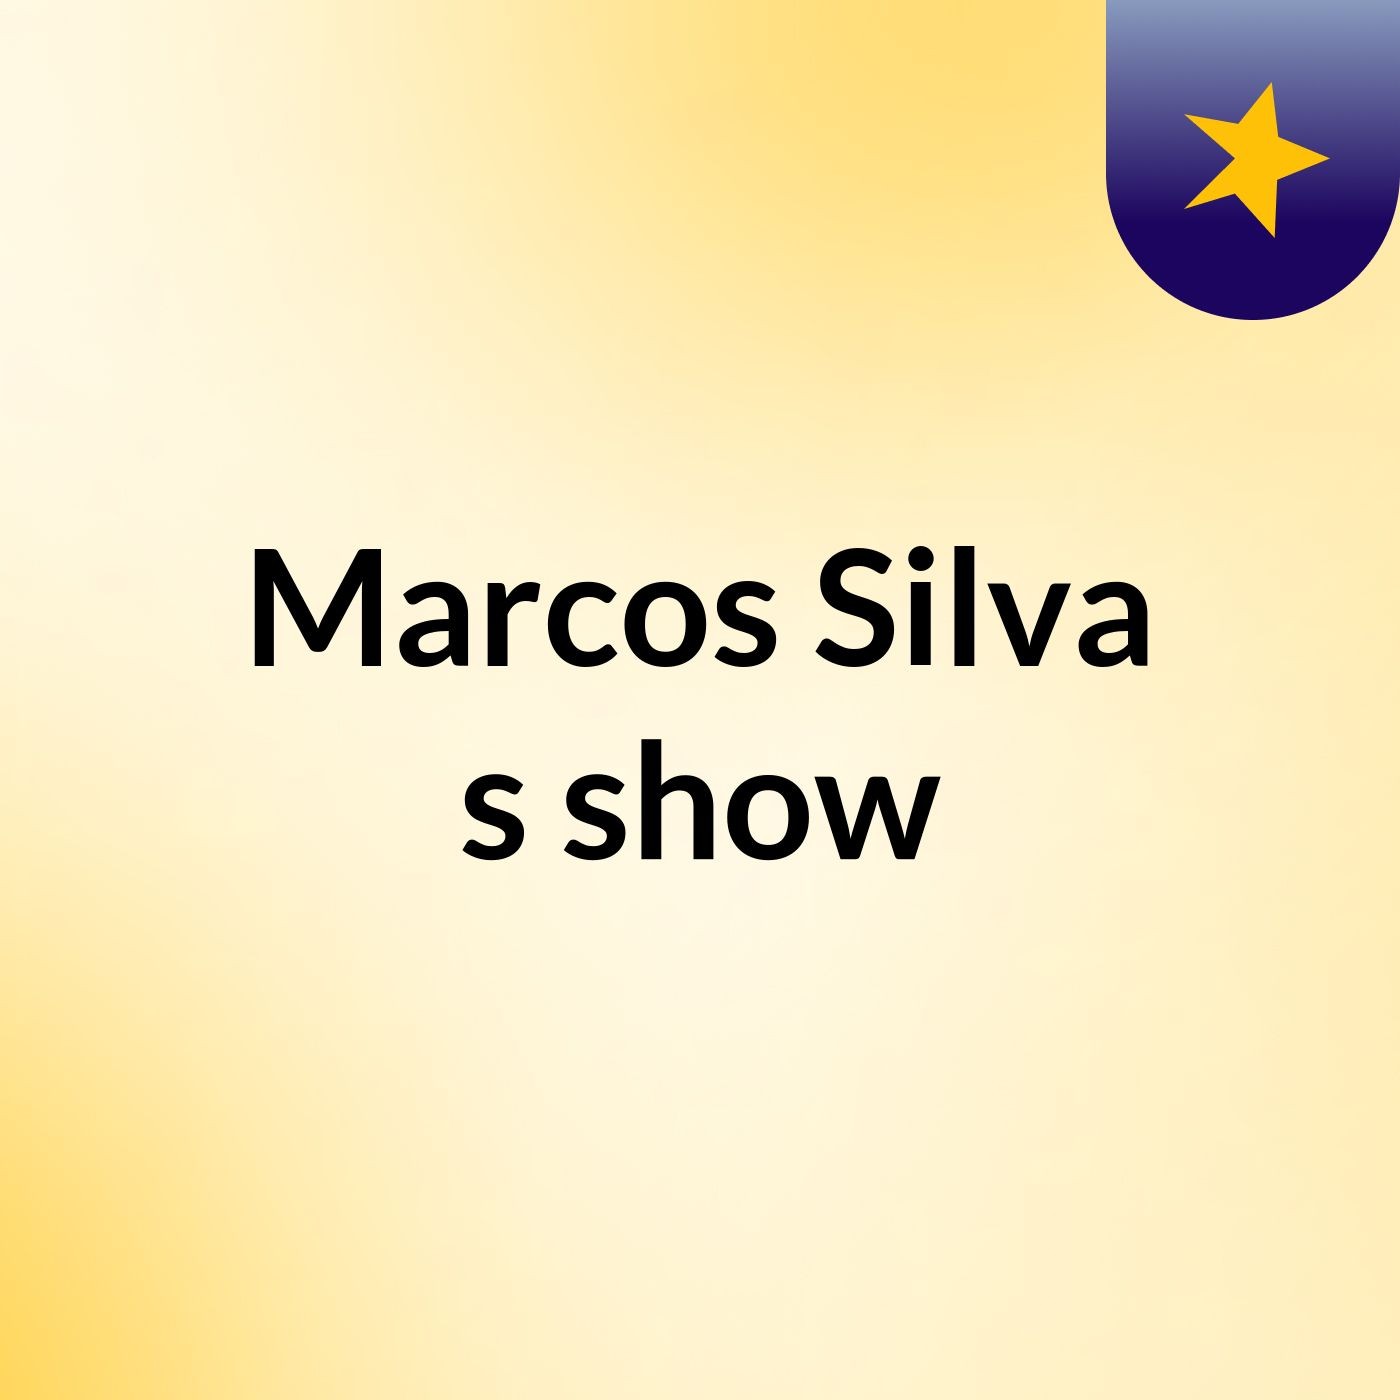 Marcos Silva's show